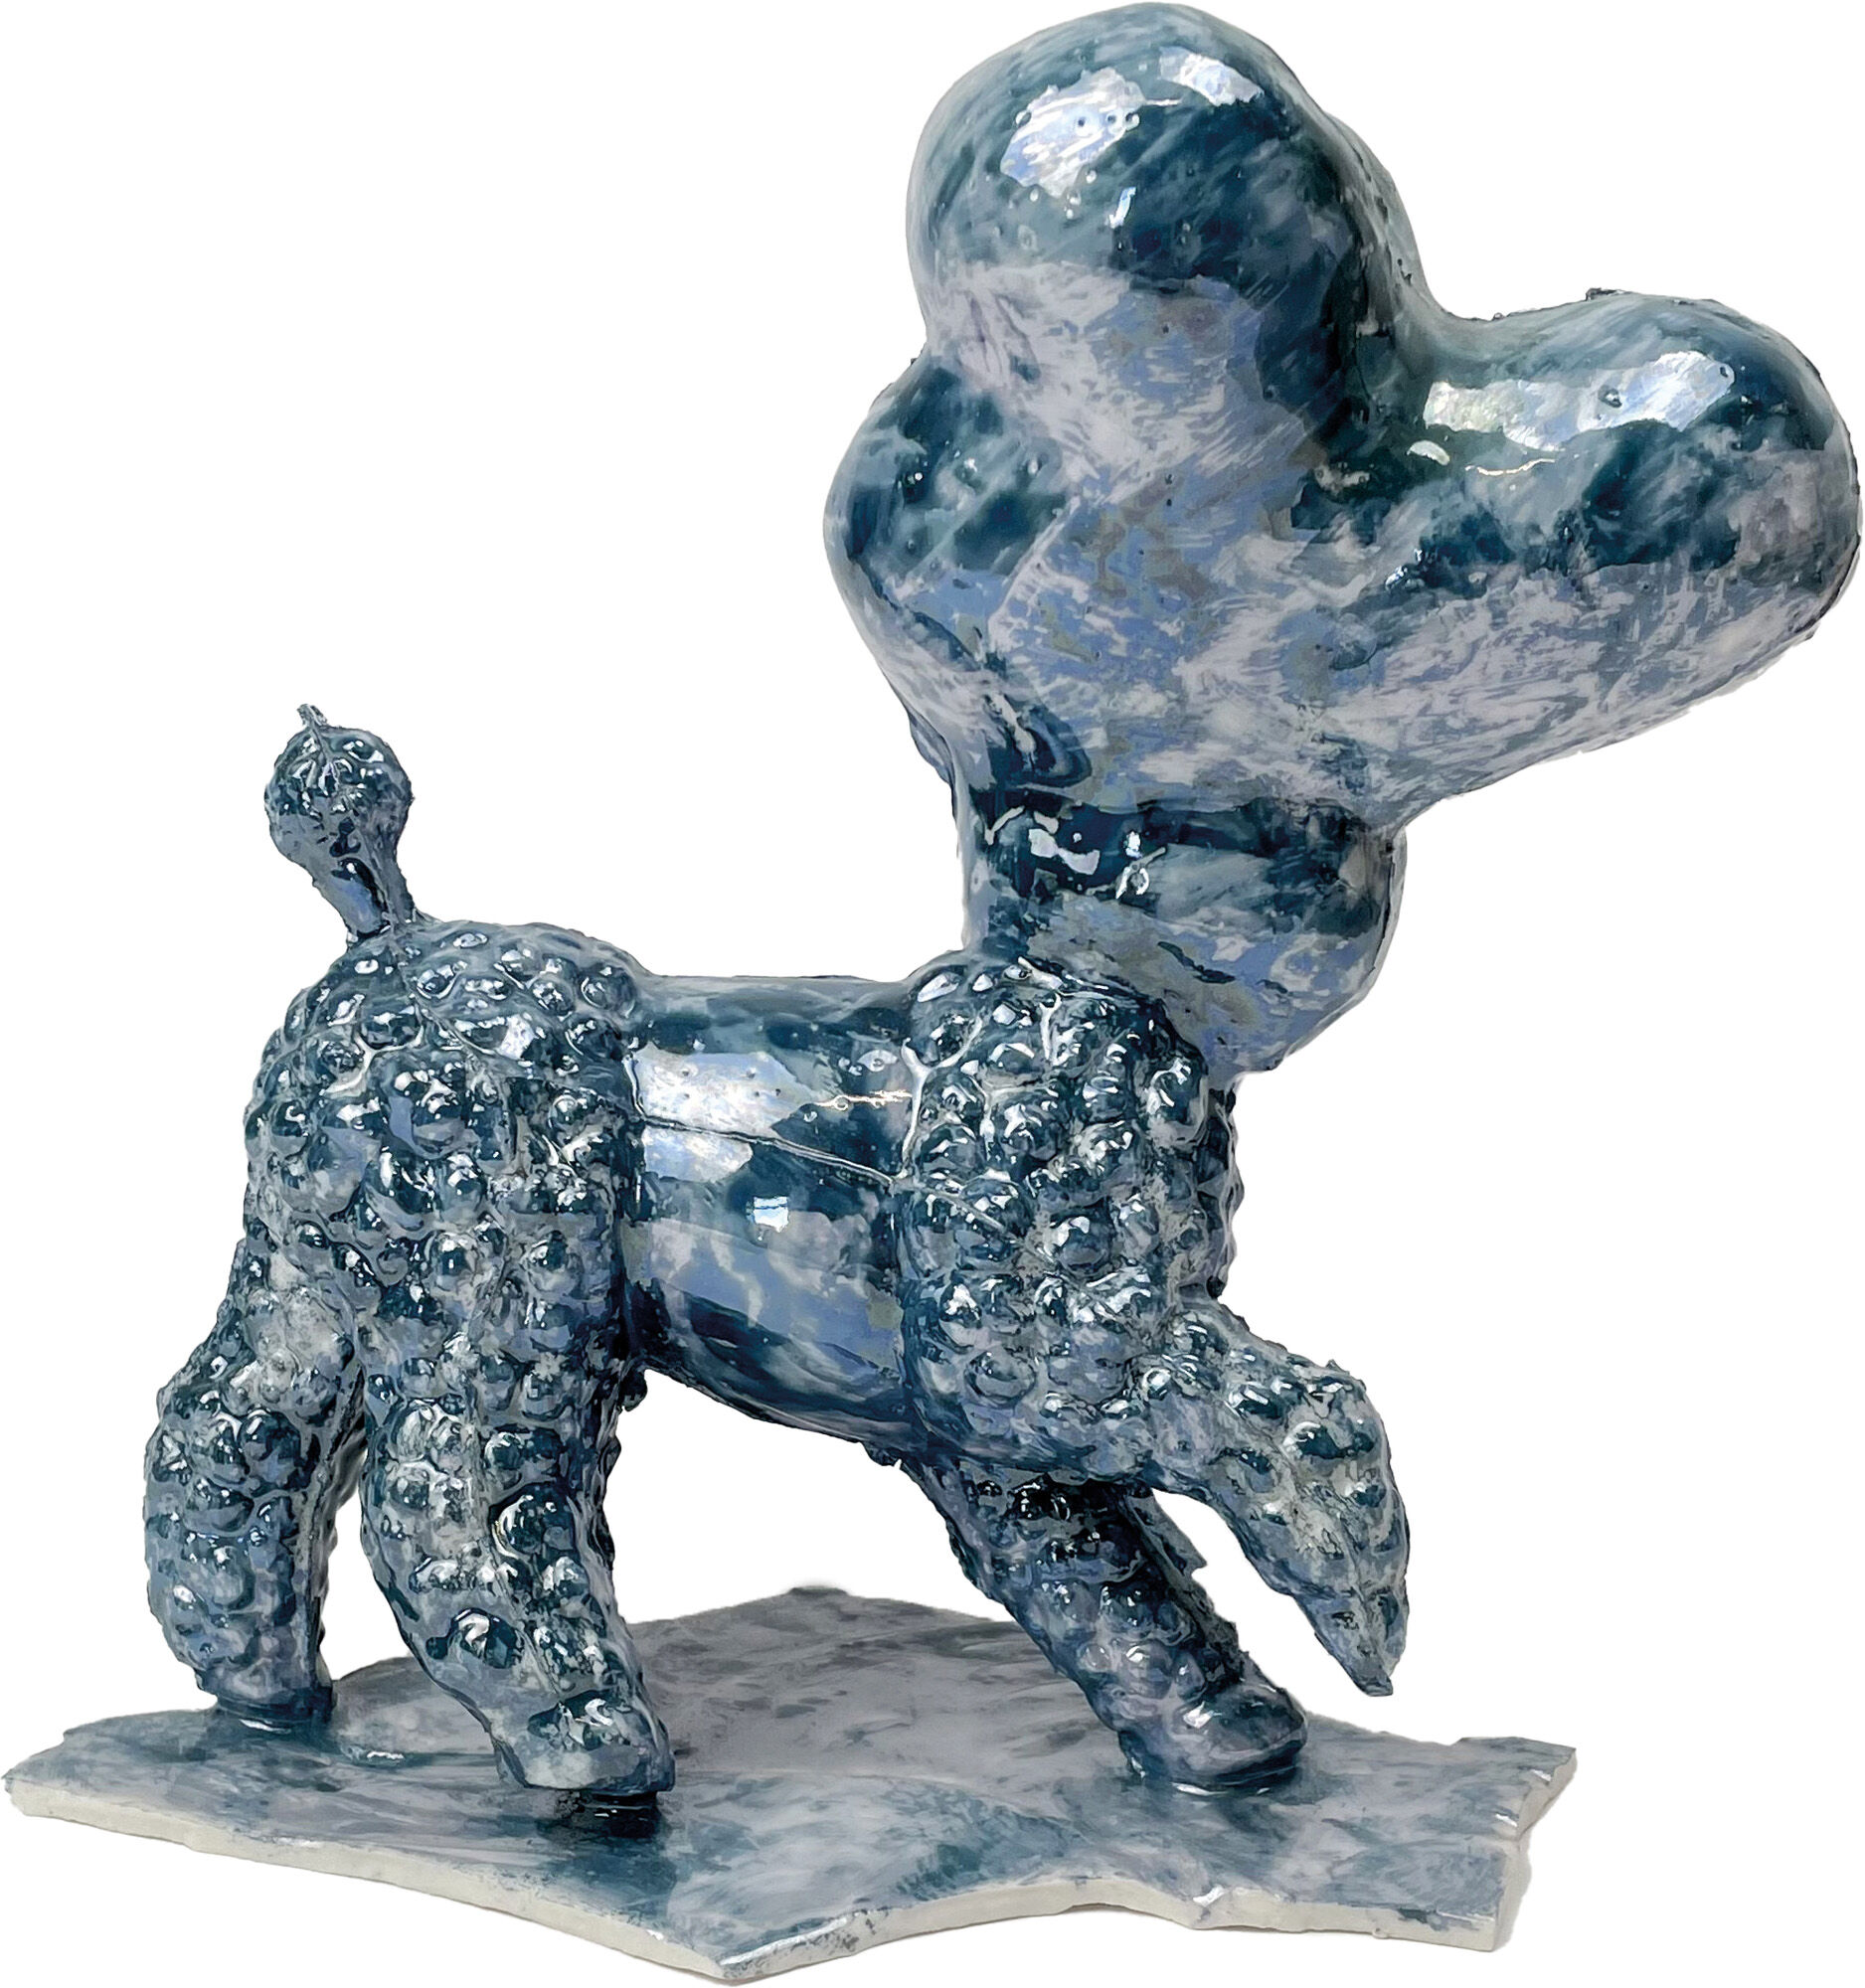 Skulptur "Tipsy" (2020), porcelæn cstorm-arsmundi-base.detail.by-artist Hannes Uhlenhaut